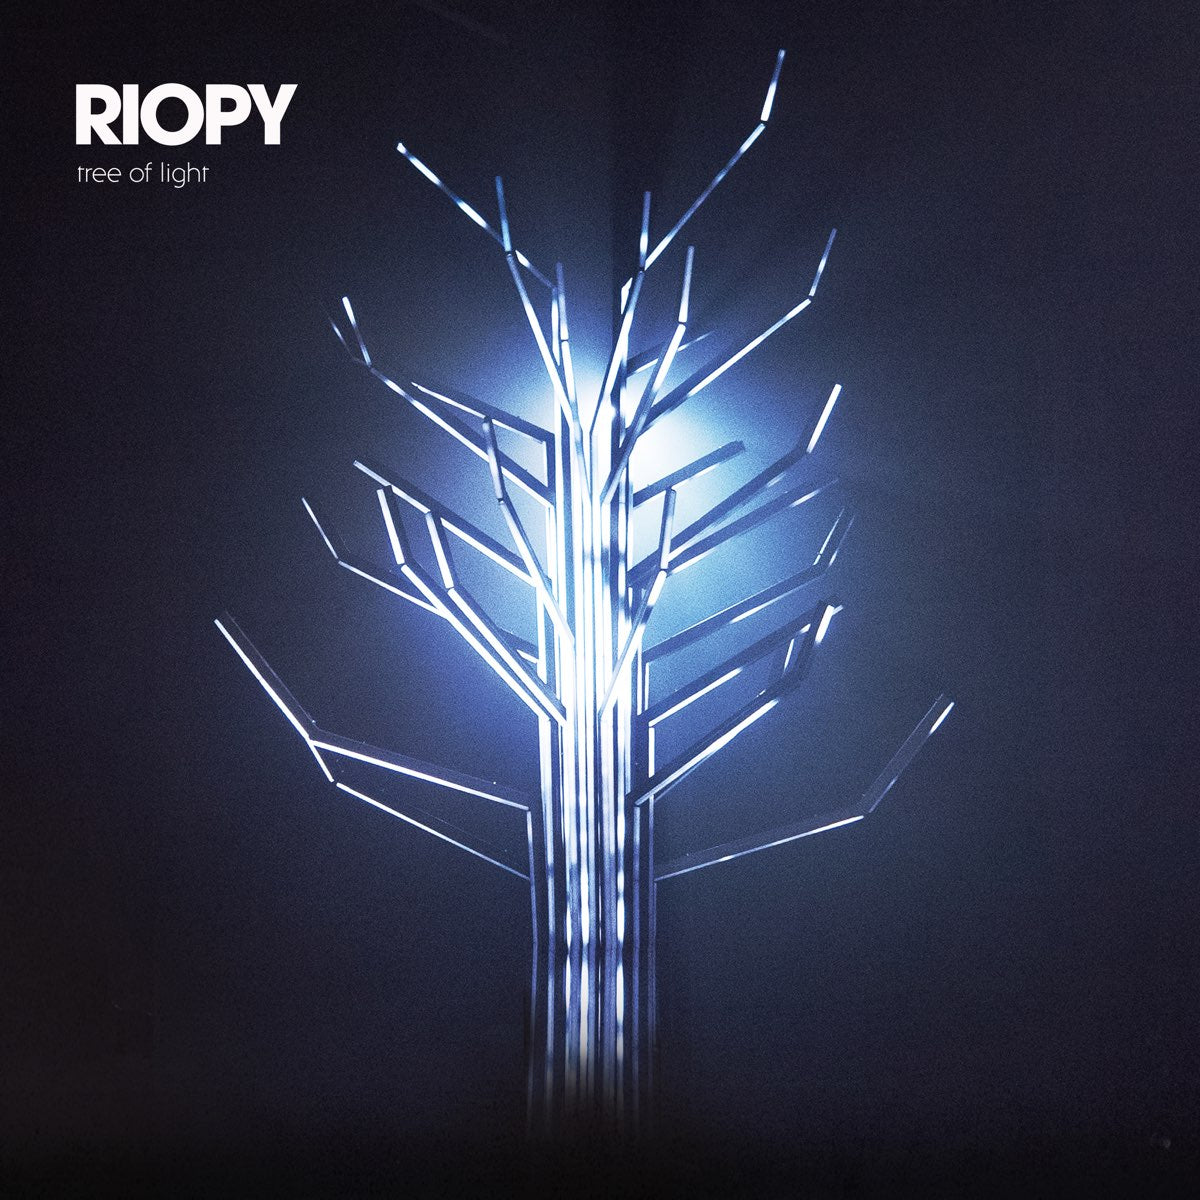 RIOPY's Tree of Light album